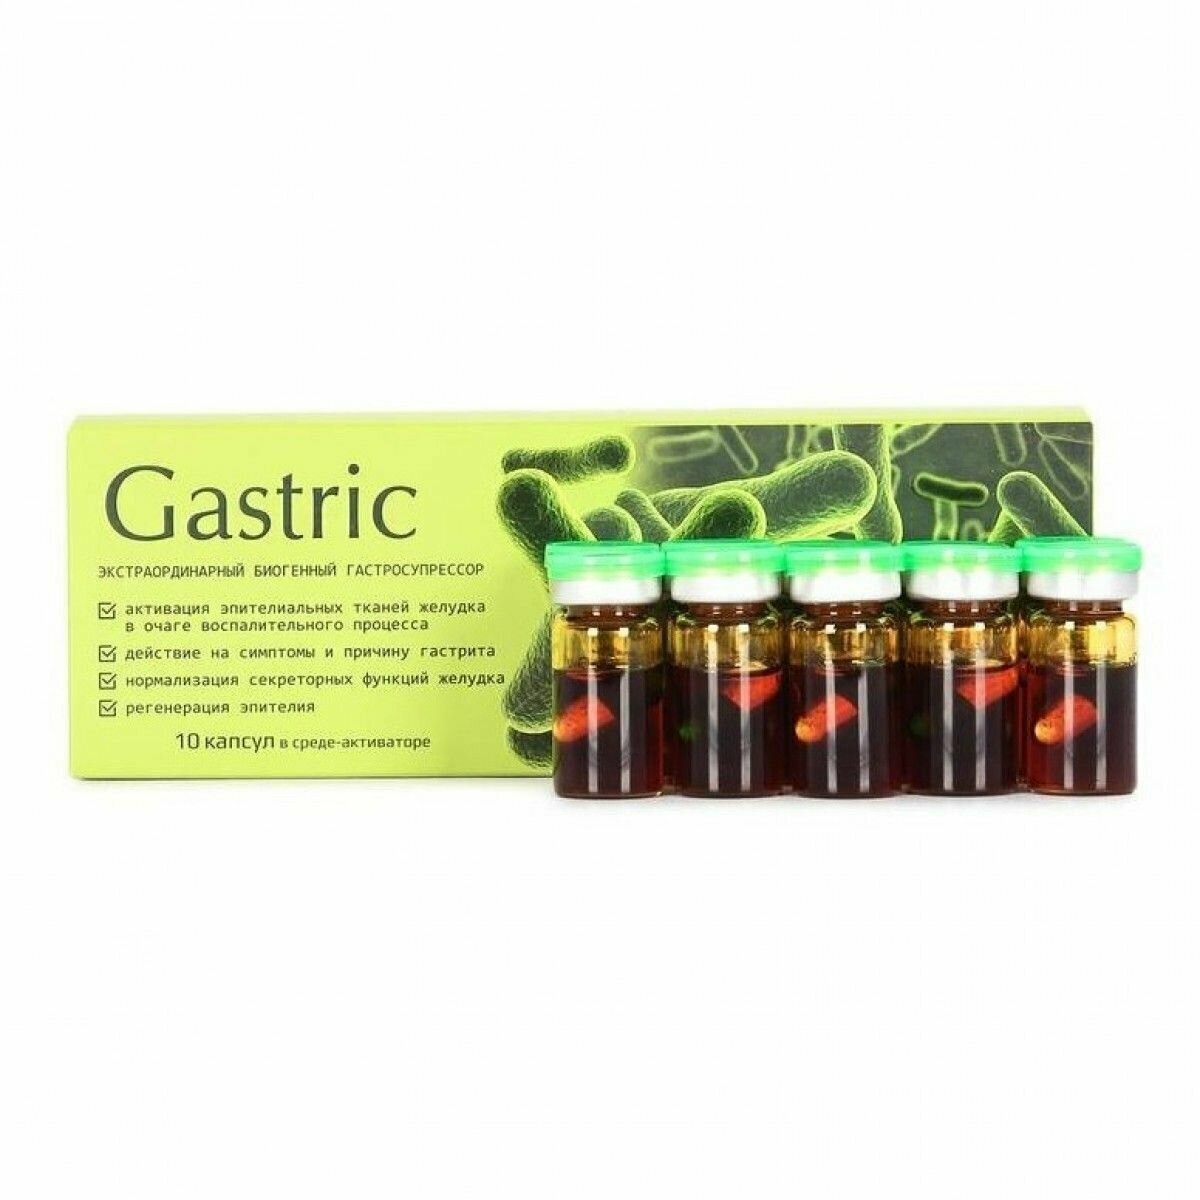 Gastric (Гастрик) KapsOila - пищевая добавка для желудка капсулы 10 шт. При гастрите и язве нарушении микрофлоры и грибке. омега-3 омега-6 жирные кислоты. Сашера-МЕД.